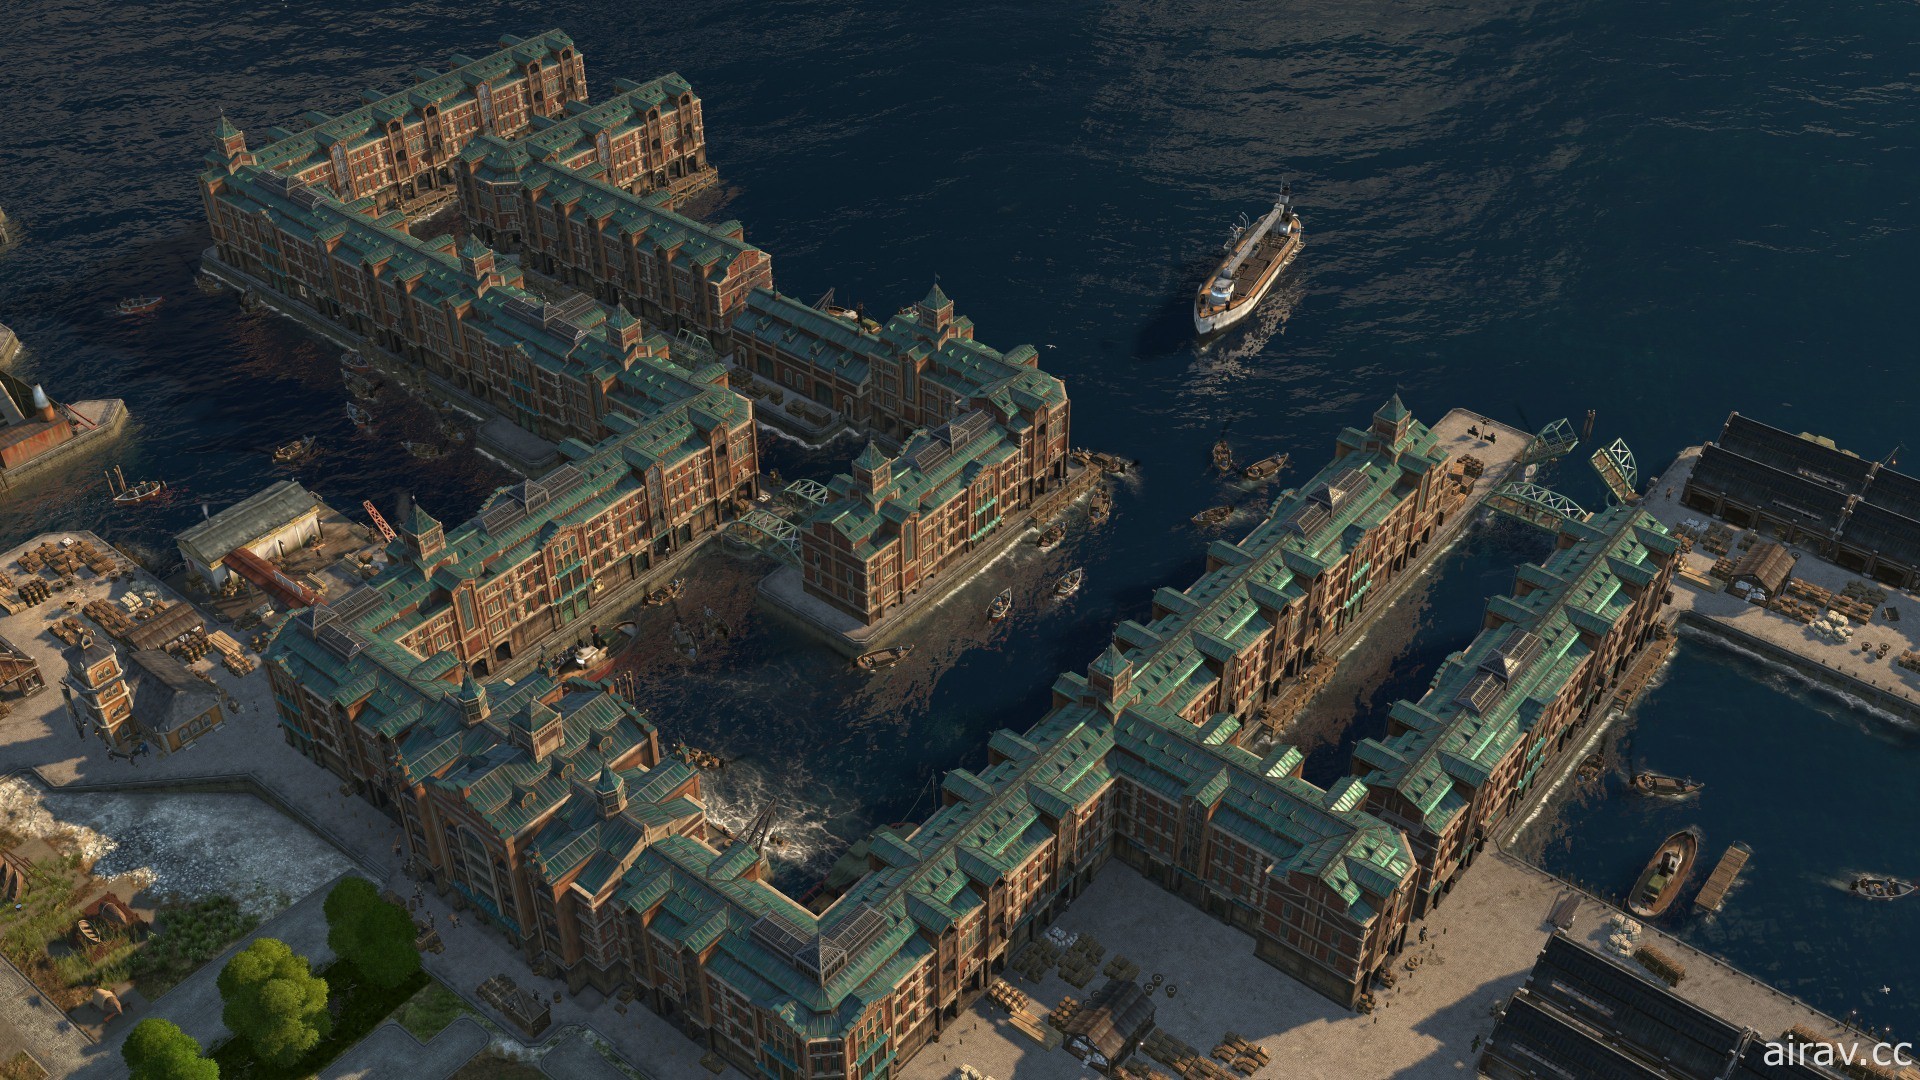 《美丽新世界 1800》第 3 季首个 DLC“港湾风情”上线 周末开放限时免费游玩